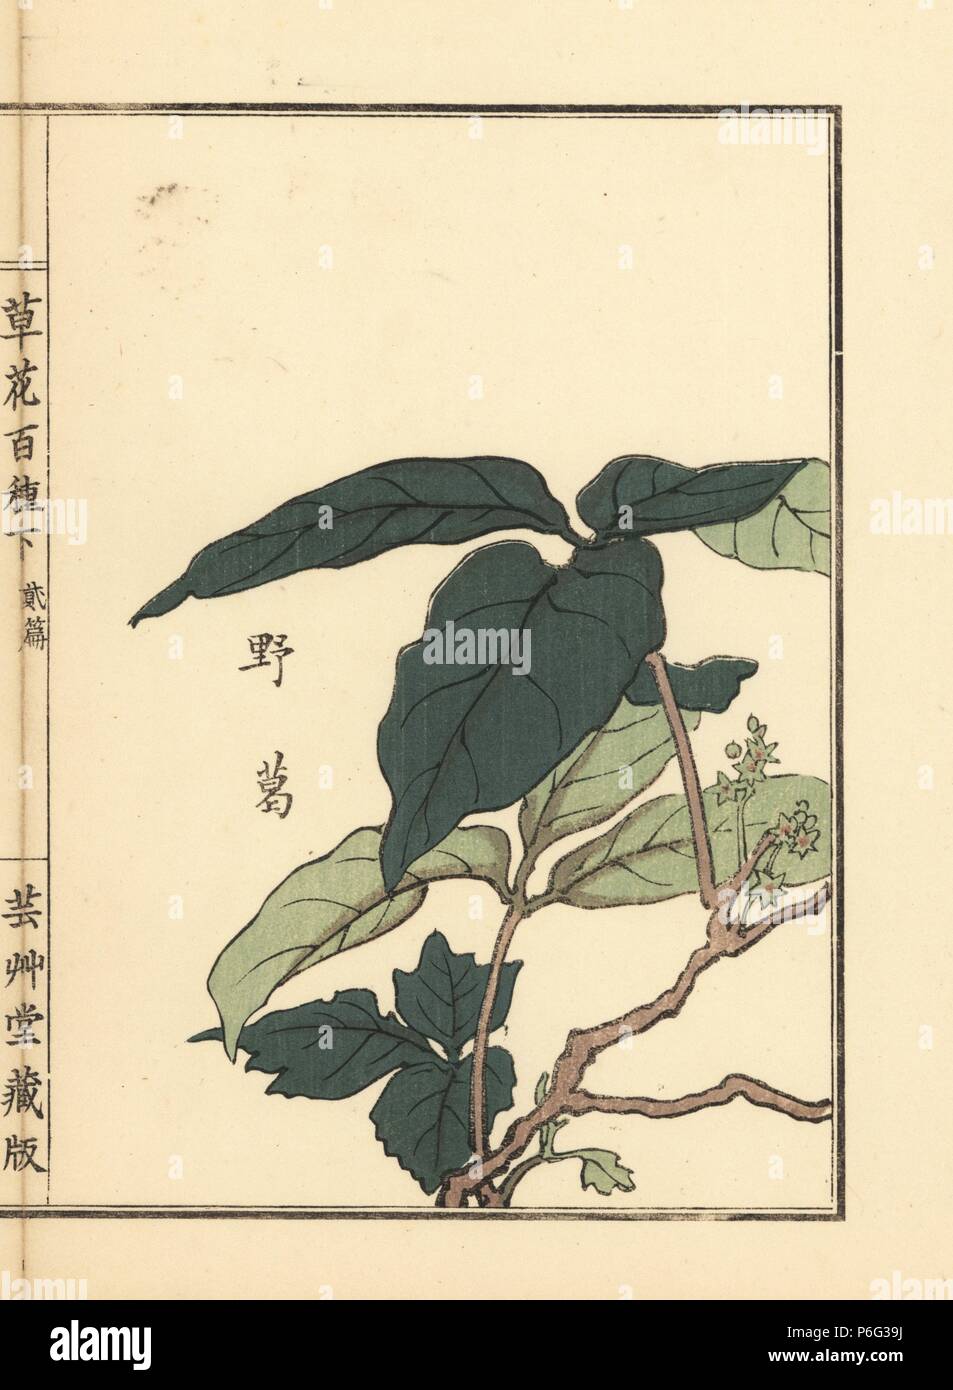 Yakuzu or kudzu, Japanese arrowroot, Pueraria lobata. Handcoloured woodblock print by Kono Bairei from Kusa Bana Hyakushu (One Hundred Varieties of Flowers), Tokyo, Yamada, 1901. Stock Photo